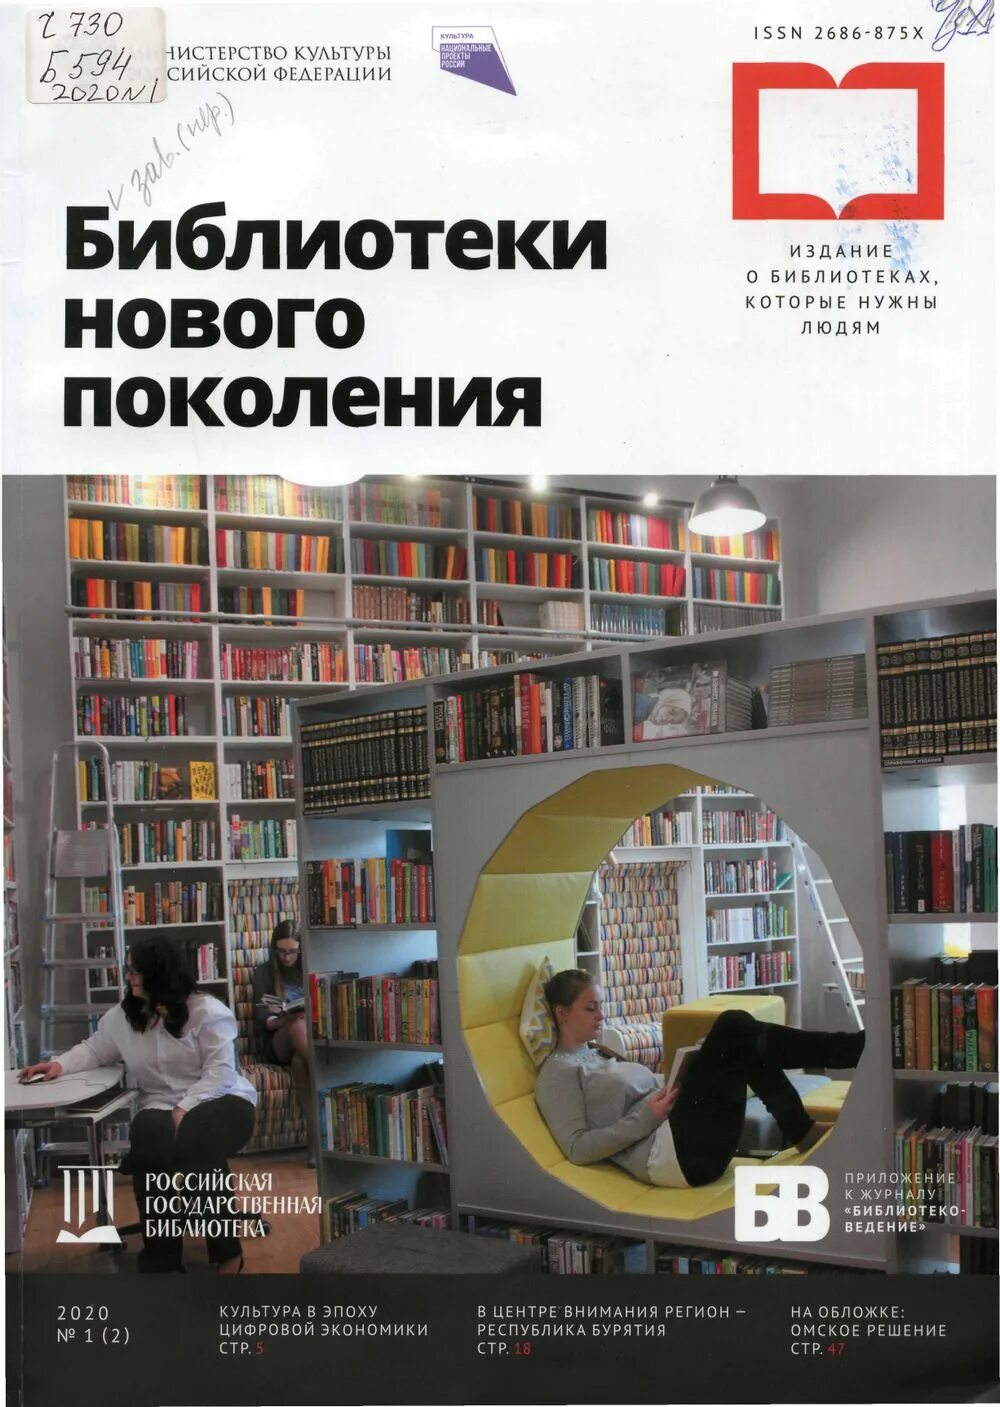 Новые журналы в библиотеке. Библиотека нового поколения. Модельная библиотека. Модельная библиотека нового поколения.